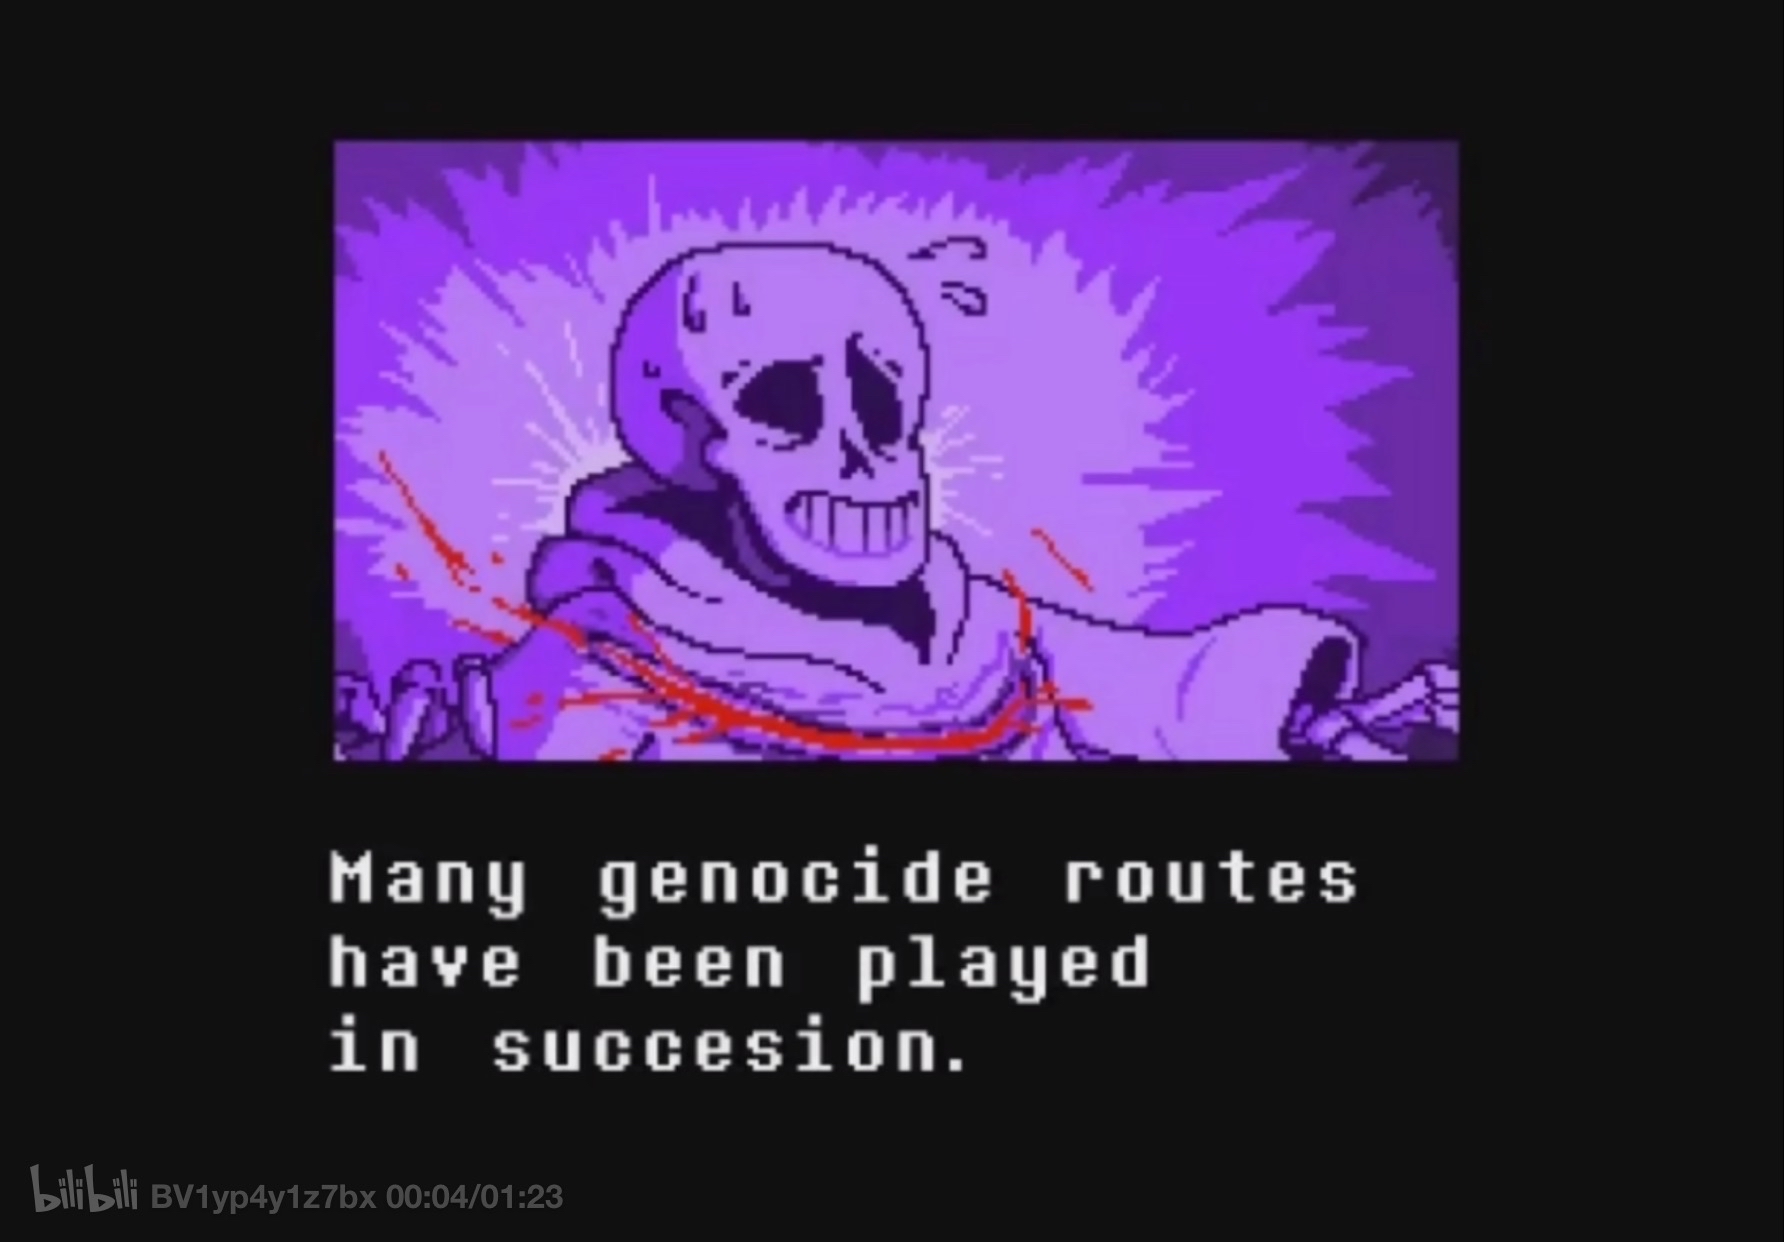 故事发生在反转之下许多屠杀线打完后 papyrus试图阻止玩家,但都失败